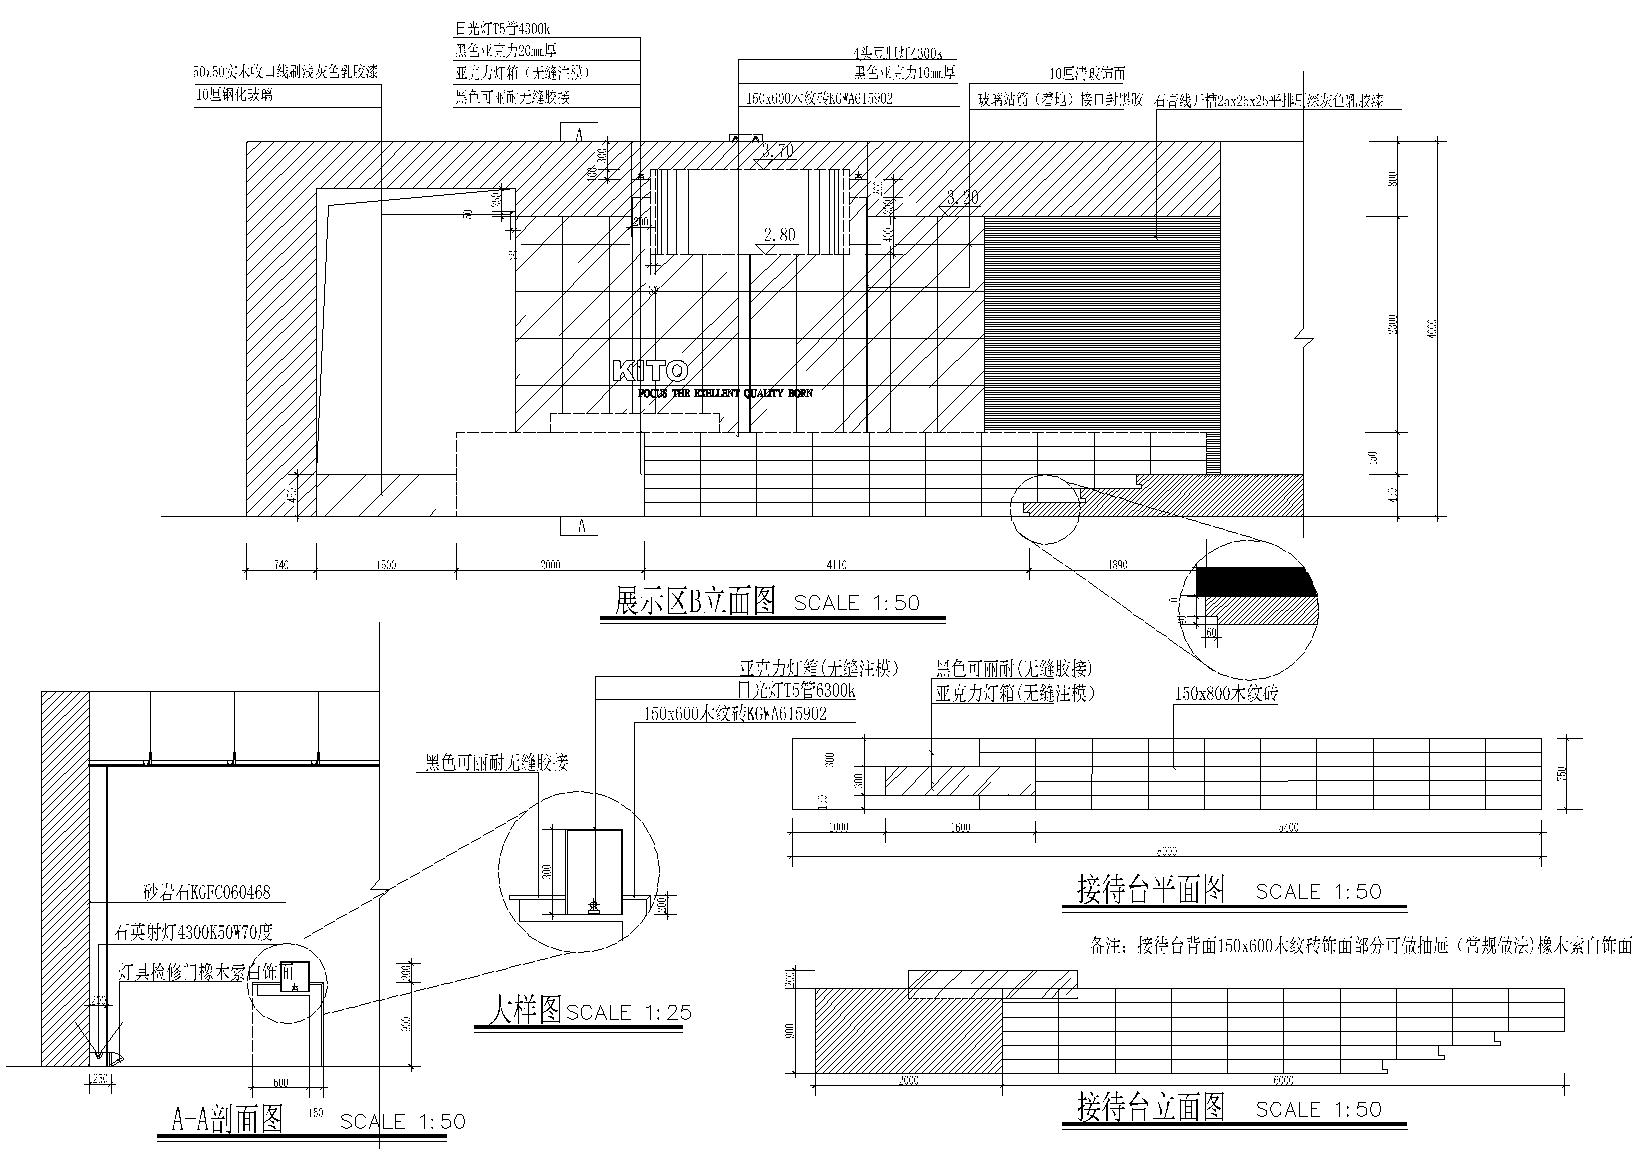 KITO某概念展厅艺术思想馆施工图+建筑外观-展示区及接待台立面图10